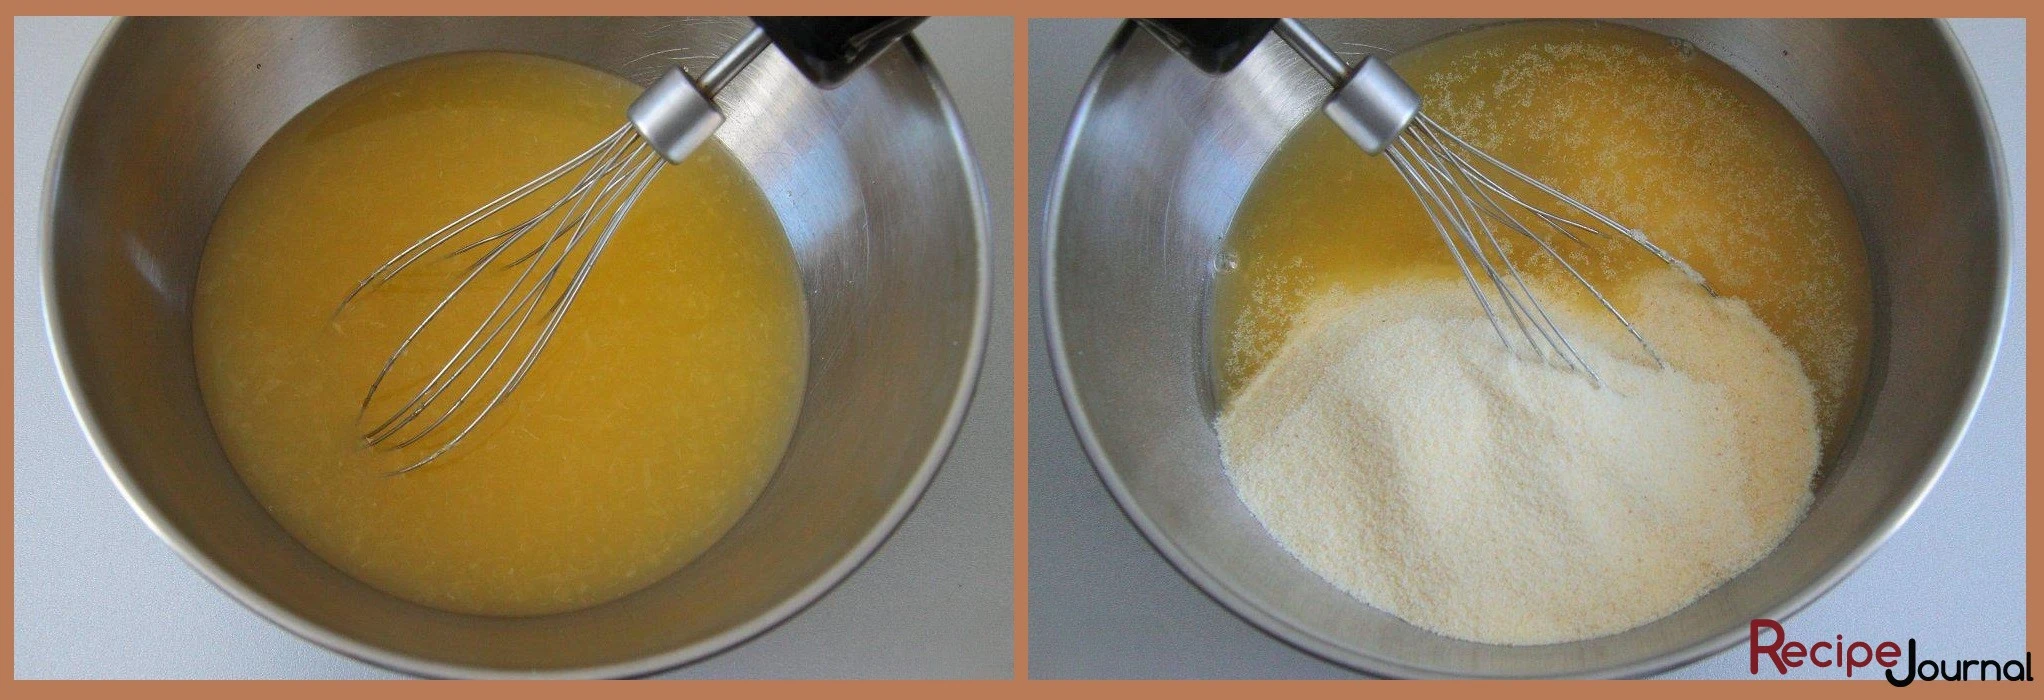 Смешиваем апельсиновый сок и сахар, добавляем манную крупу и хорошо перемешиваем.